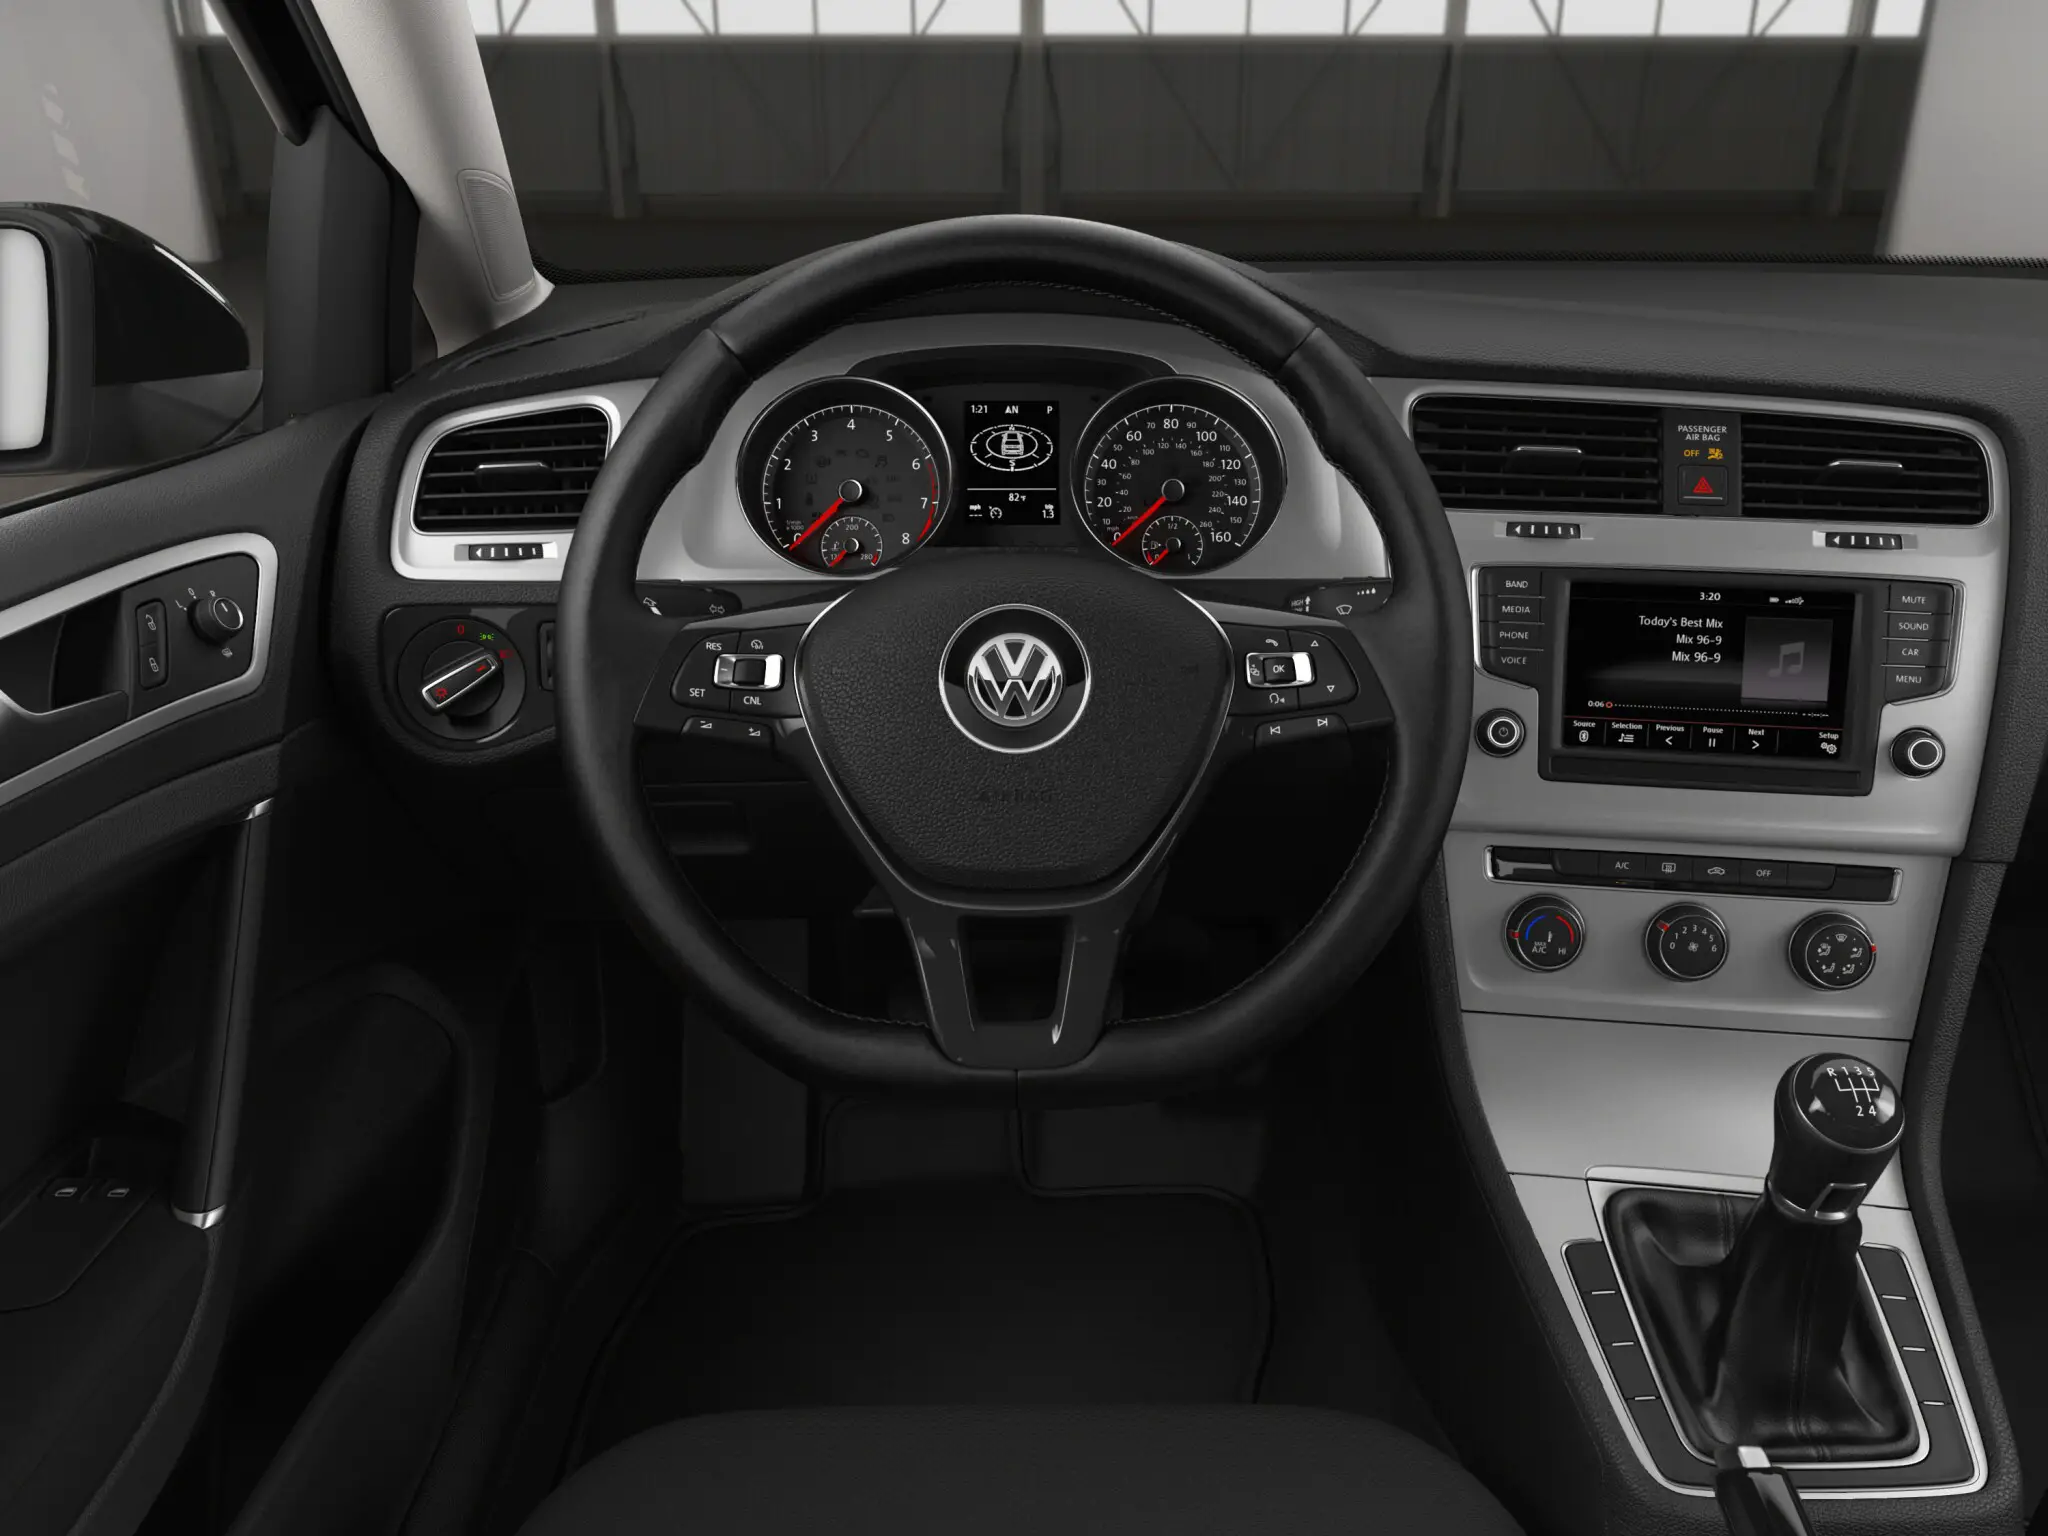 Volkswagen Golf Tsi 2 Door Interior Image Gallery Pictures